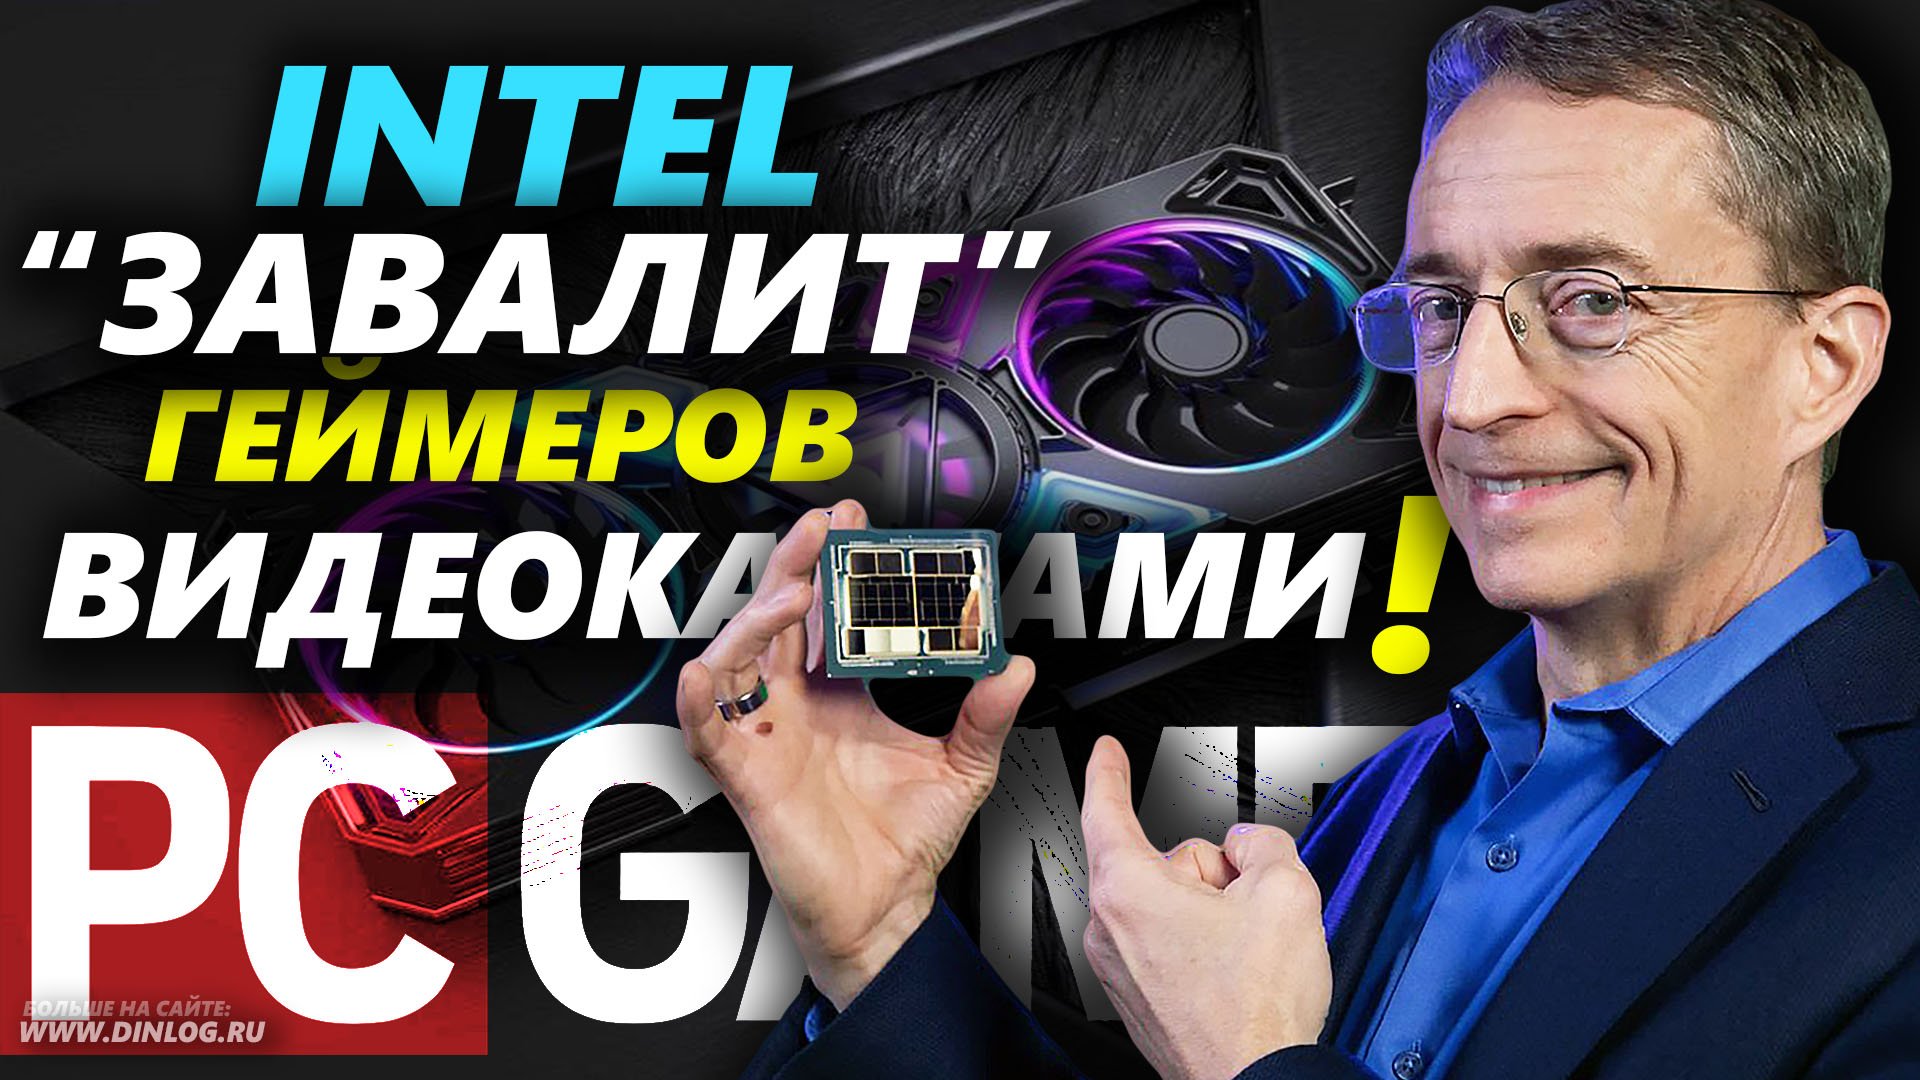 ▶ 1 МЛН Видеокарт КАЖДЫЙ ГОД: ответ Intel на обращение ГЕЙМЕРОВ ▶ Монополии Nvidia/AMD - КОНЕЦ!